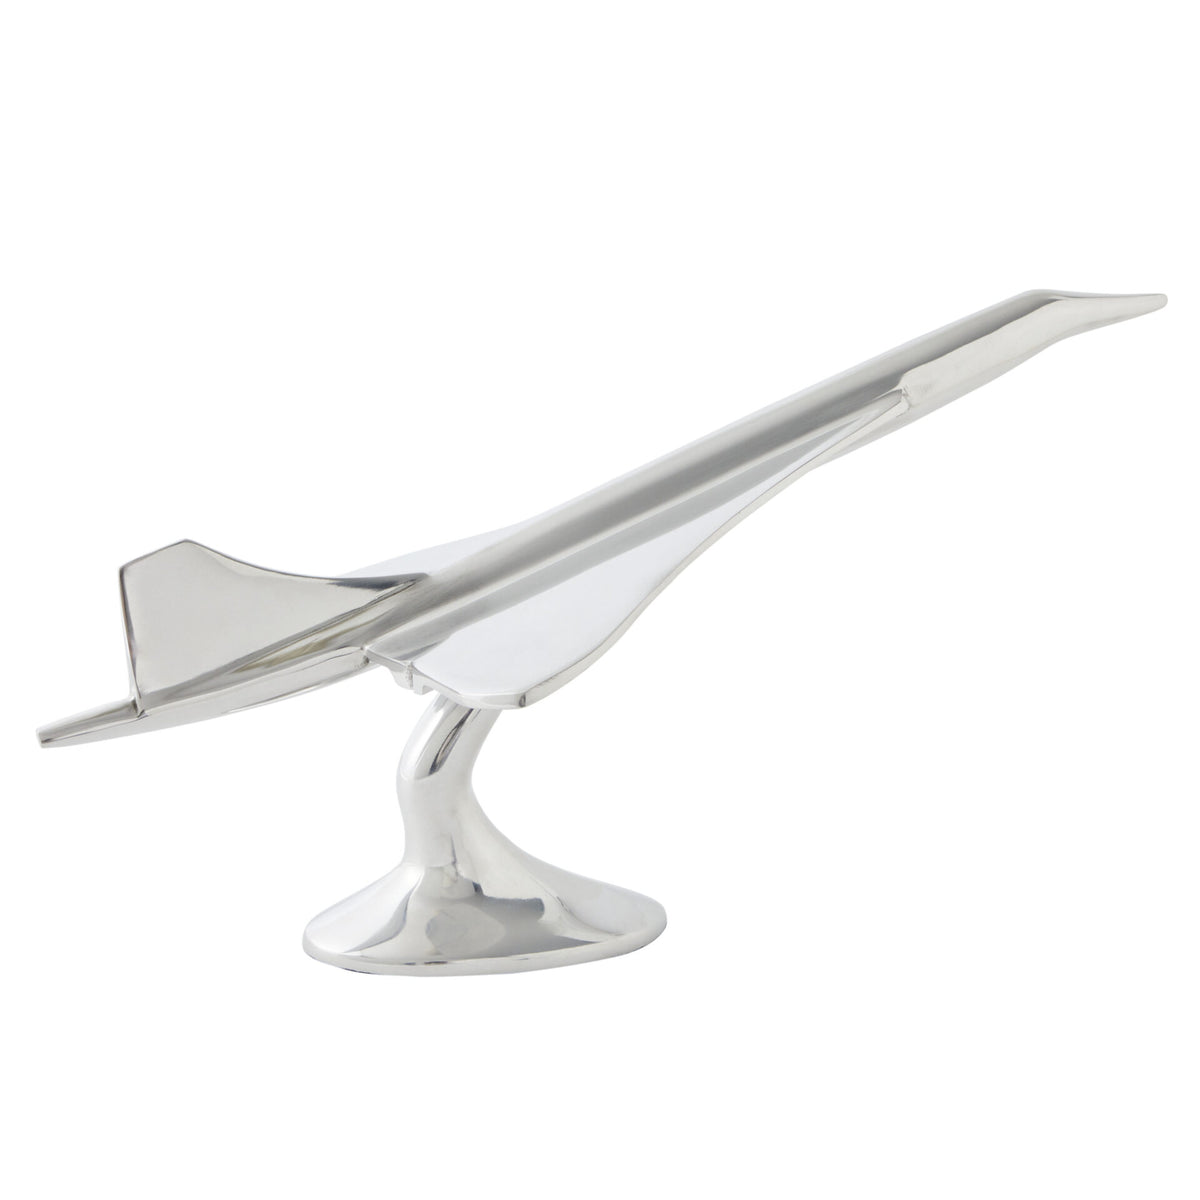 Concorde Plane Table Ornament in Aluminum - Silver